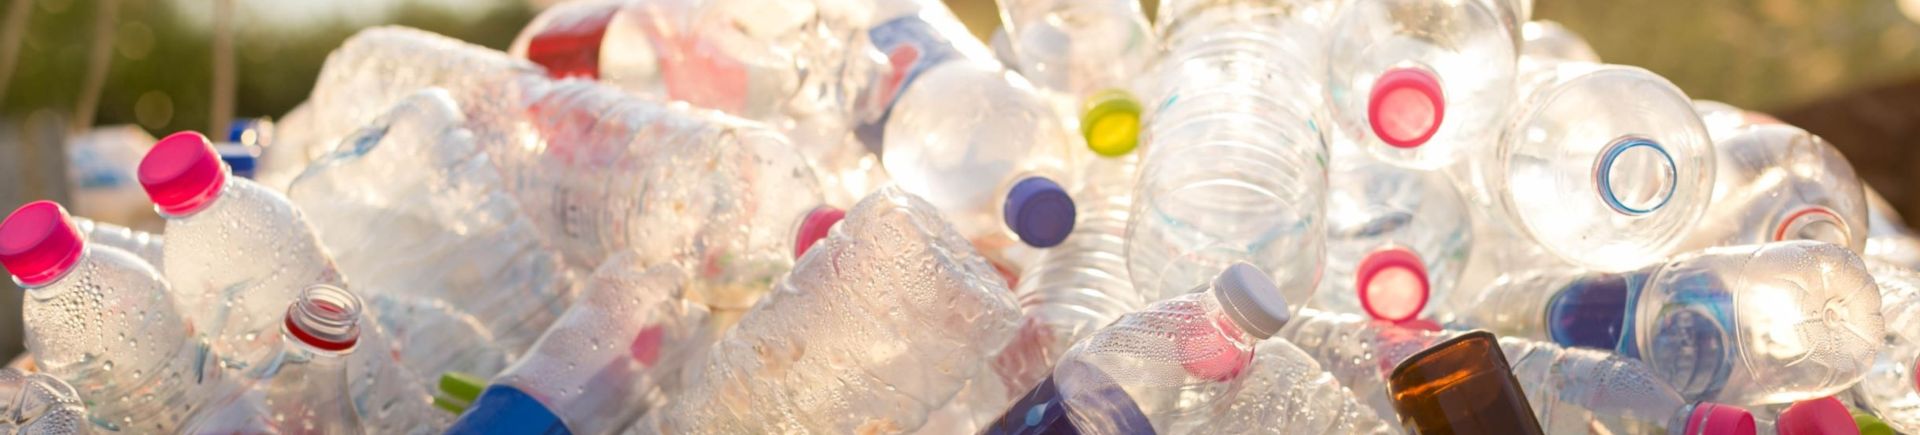 Tamil Nadu plastic ban